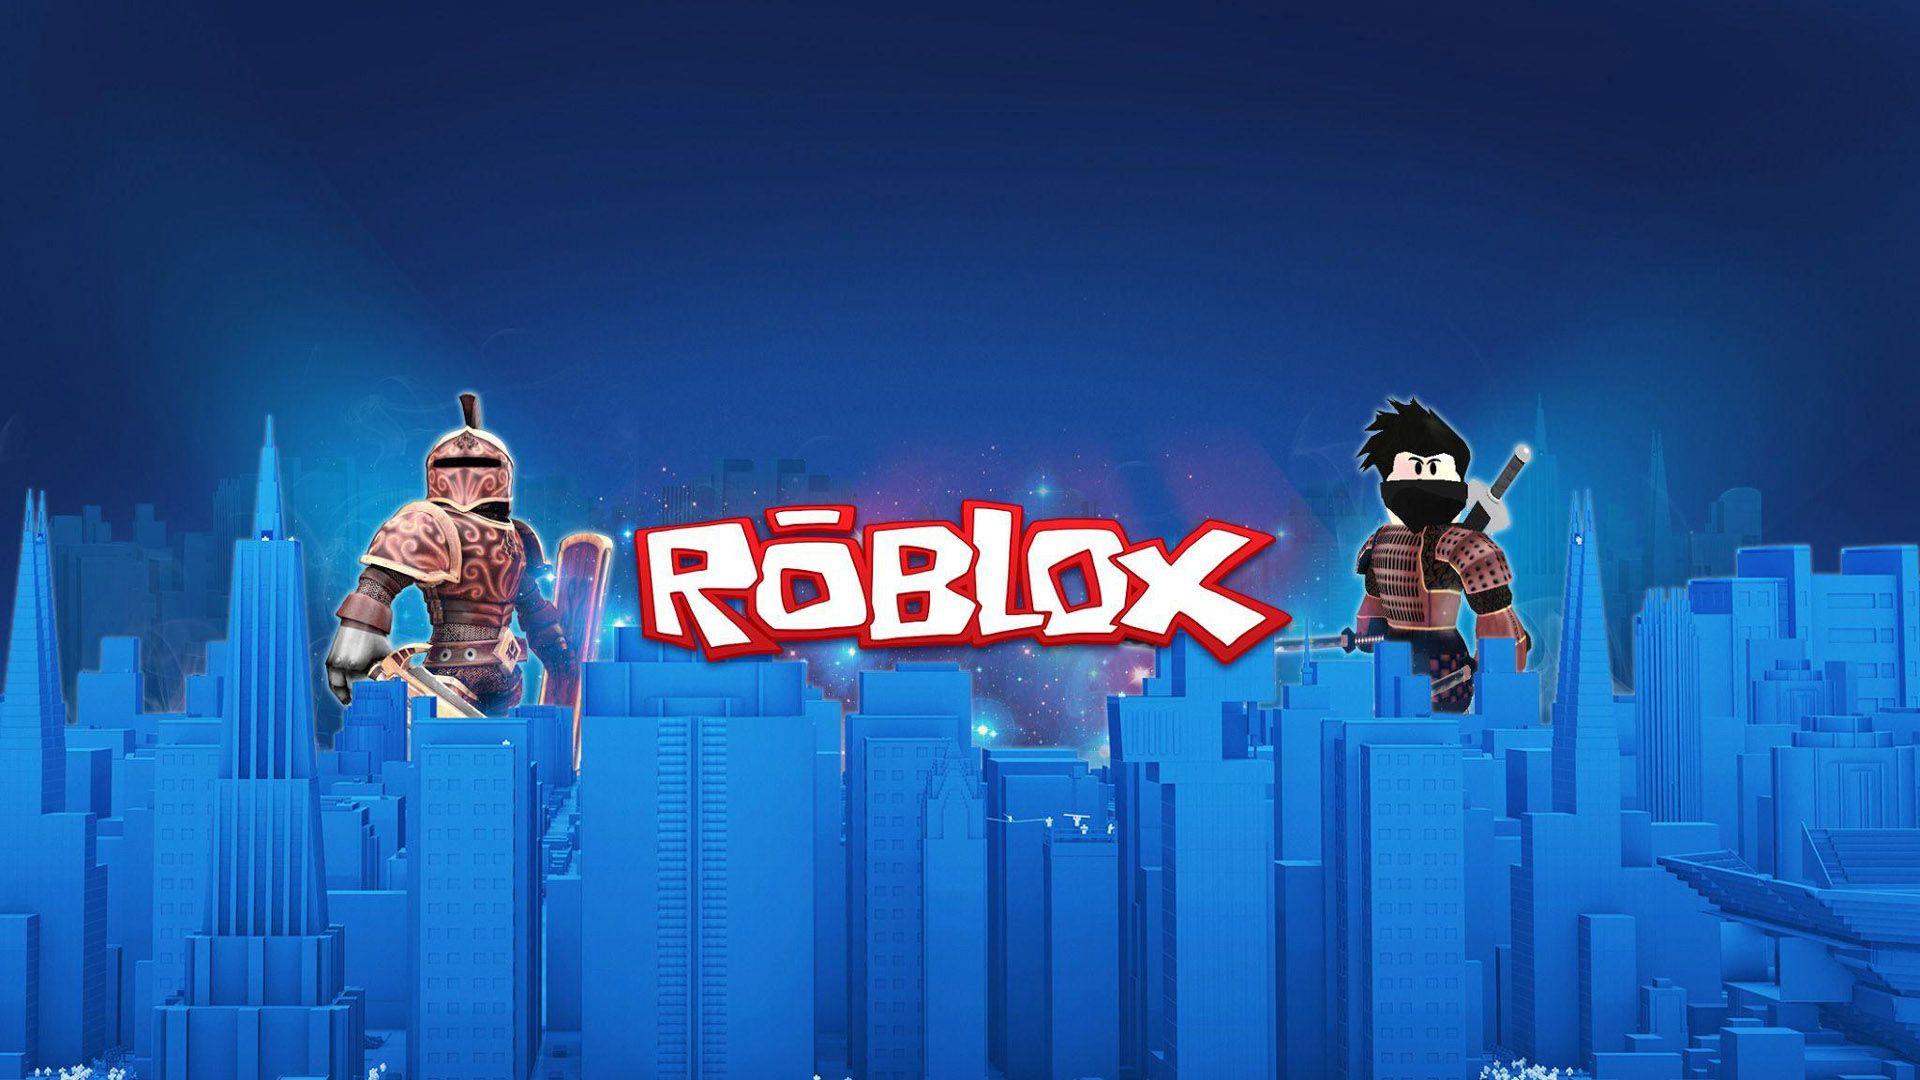 Hình nền xanh Roblox: Bạn đang tìm kiếm một không gian đầy màu sắc và sáng tạo cho màn hình của mình? Hãy chiêm ngưỡng hình nền xanh Roblox - nơi mà mọi ánh sáng đều được phô diễn tuyệt vời nhất. Hãy tạo cho mình một không gian đầy sáng tạo với những hình ảnh đáng yêu của trò chơi Roblox!